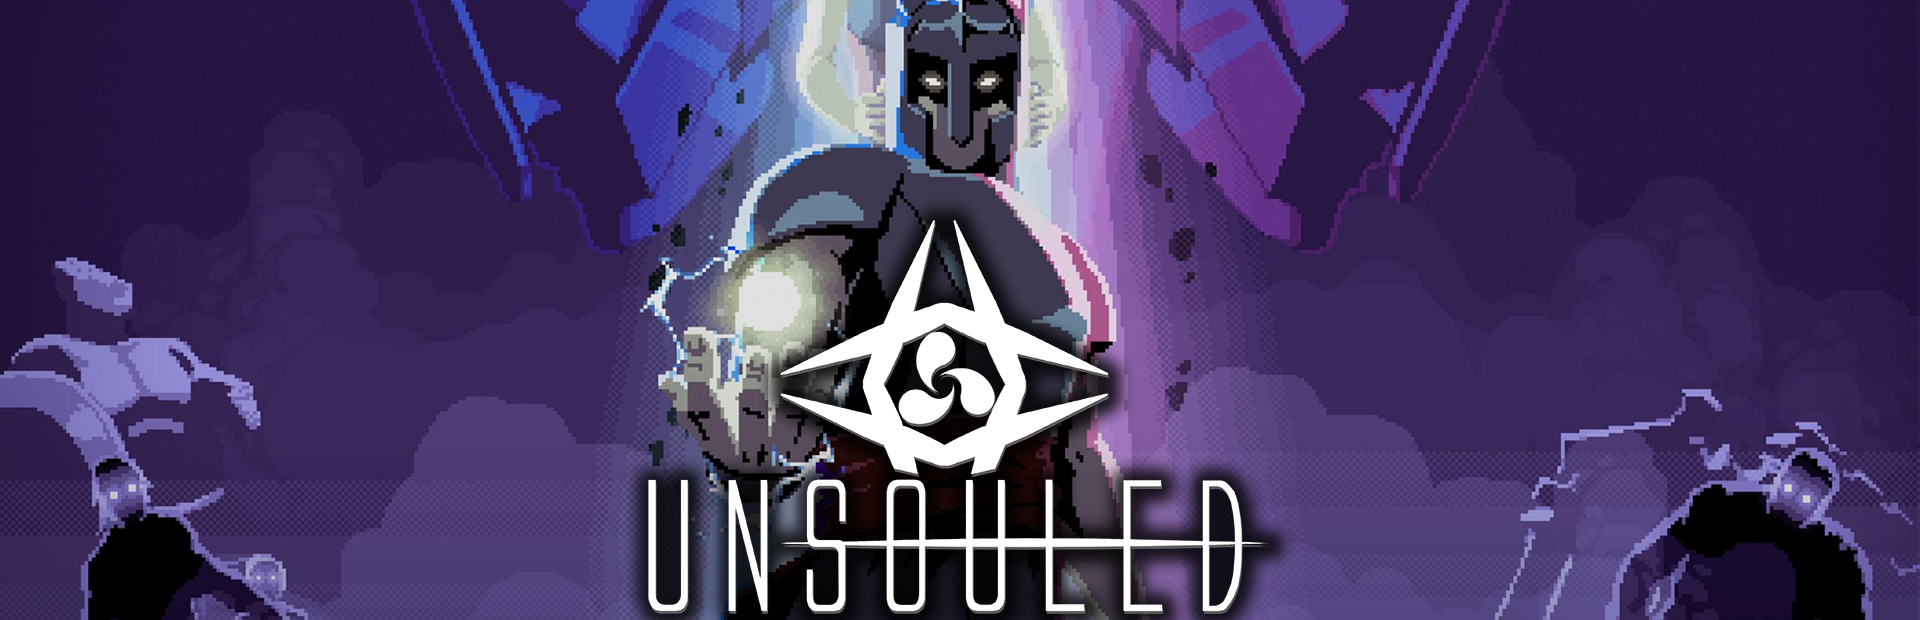 دانلود بازی Unsouled برای پی سی | گیمباتو